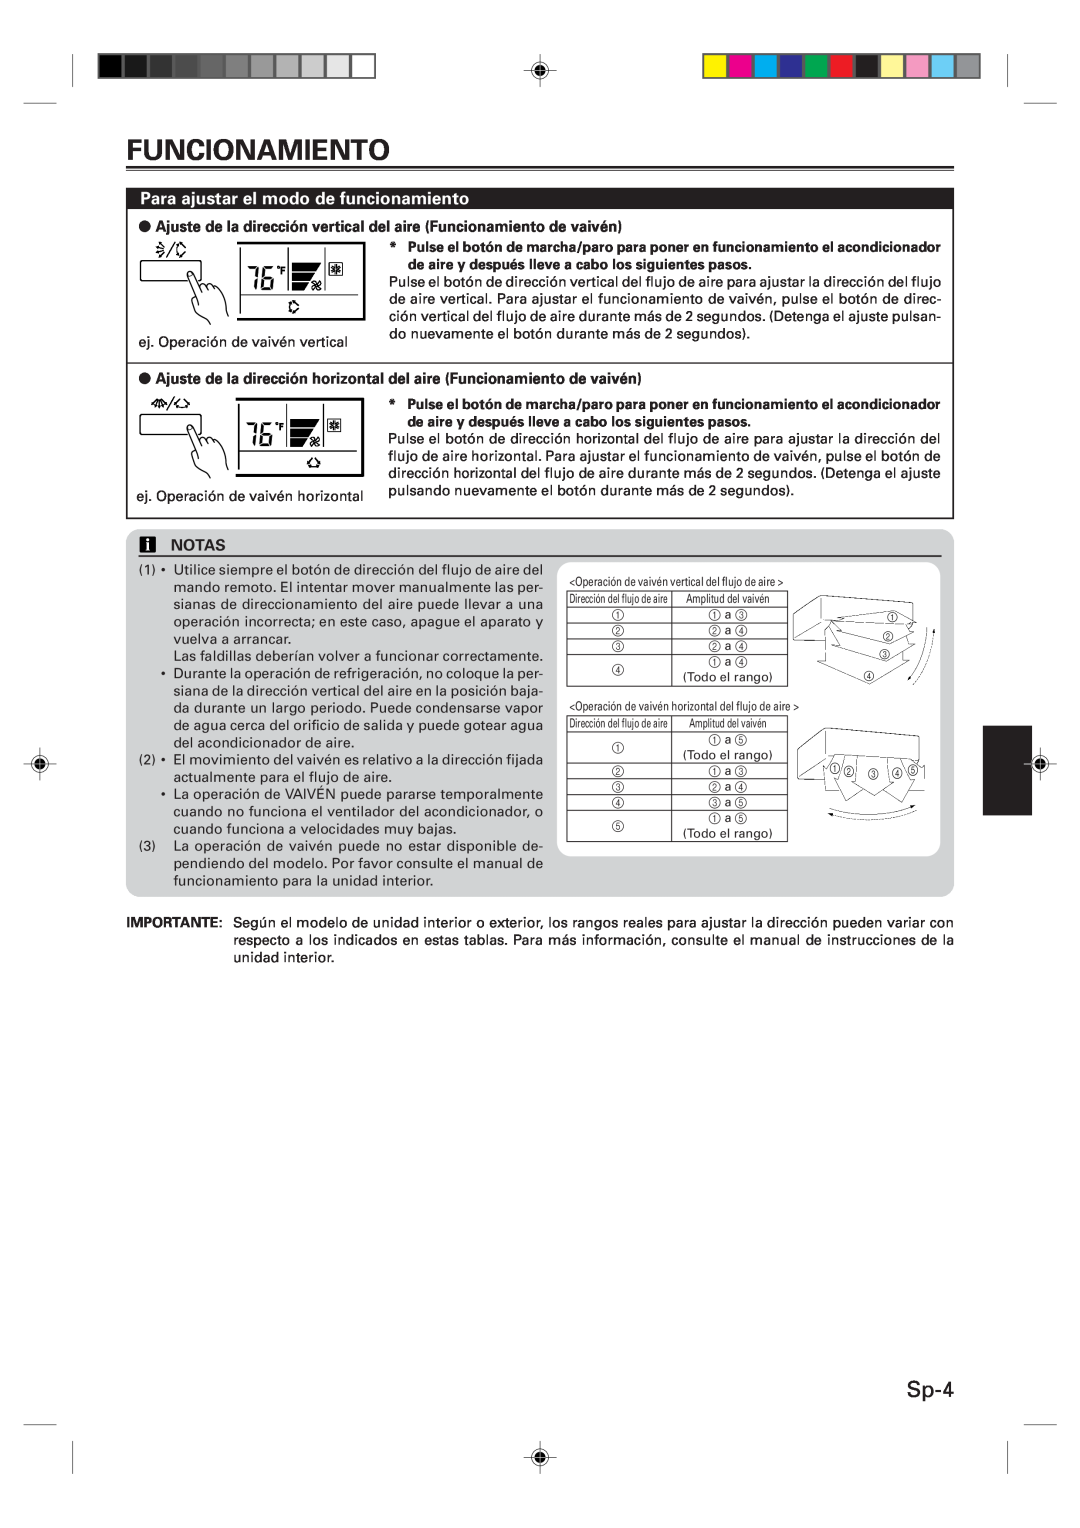 Fujitsu Remote Controller, UTB-UUB manual Sp-4, Ajuste de la dirección vertical del aire Funcionamiento de vaivén, Notas 